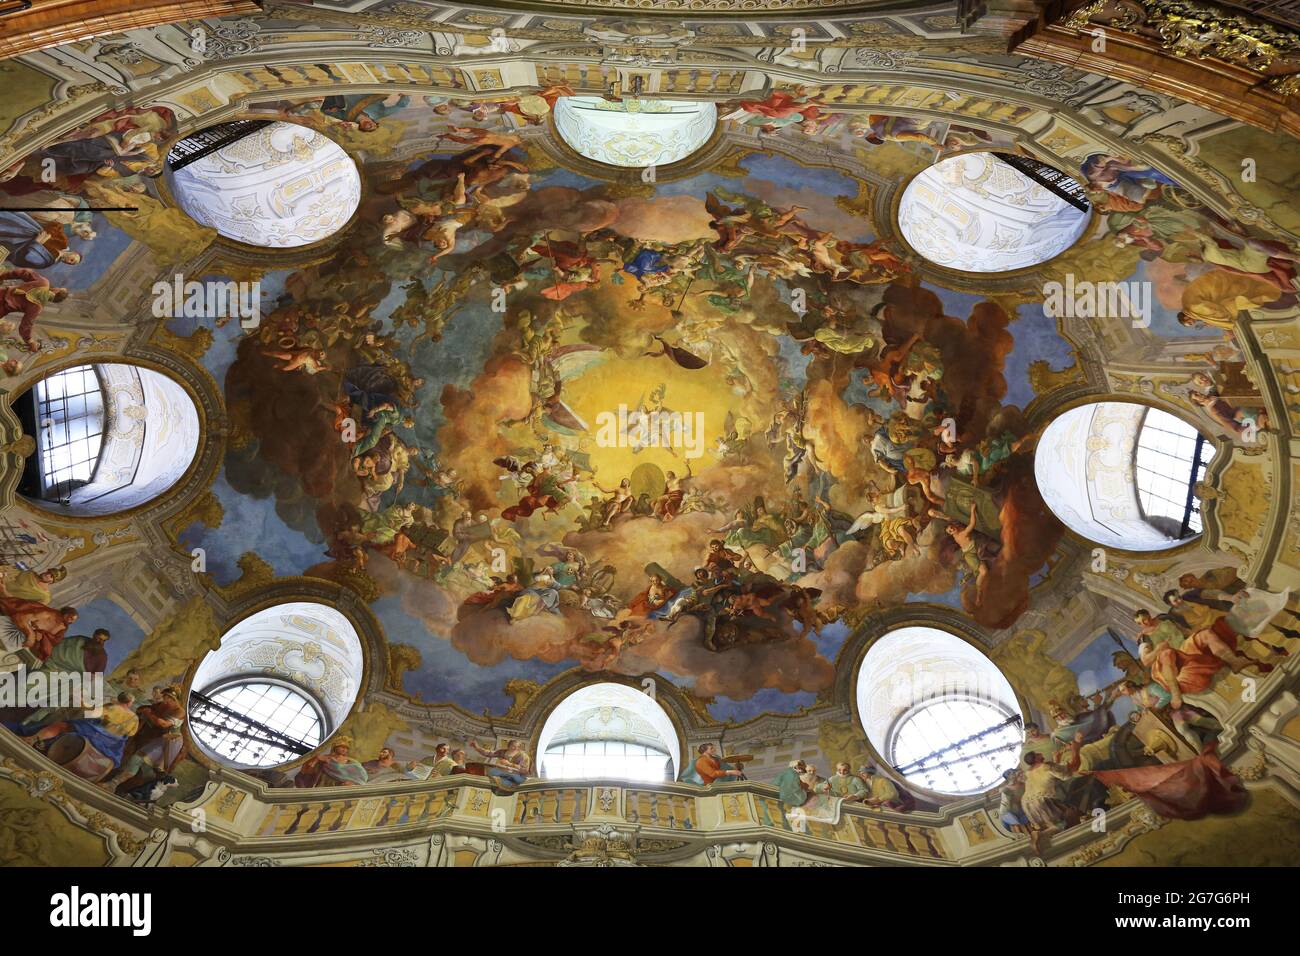 Wien, Barocke Architektur im Museum, in der Hofburg im Prunksaal der österreichischen Bibliothek nazionale di Österreich Foto Stock